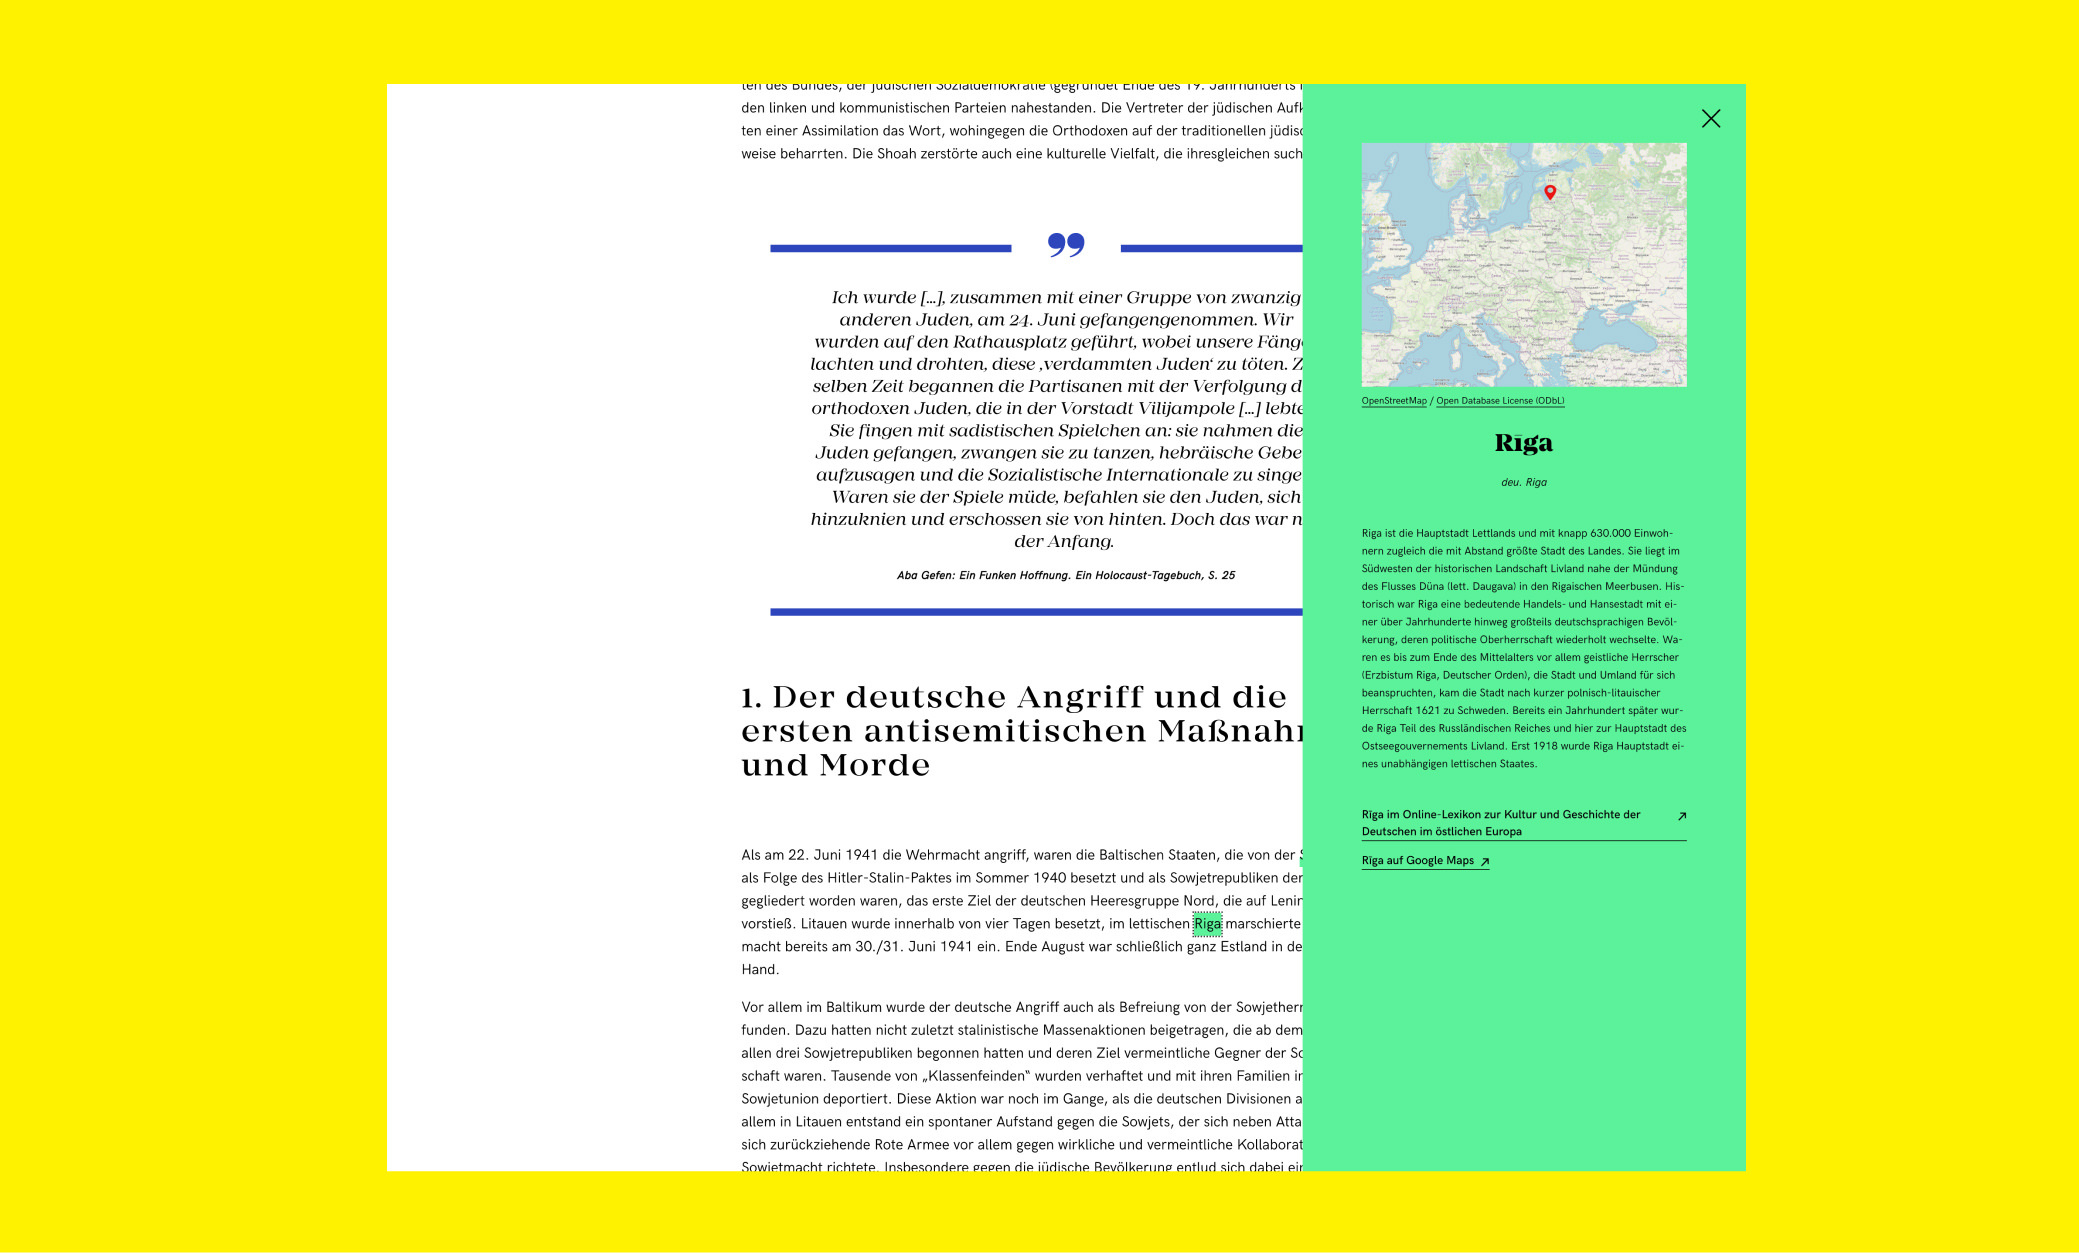 Links im Text zu einem grünen Overlay mit Informationen über Riga